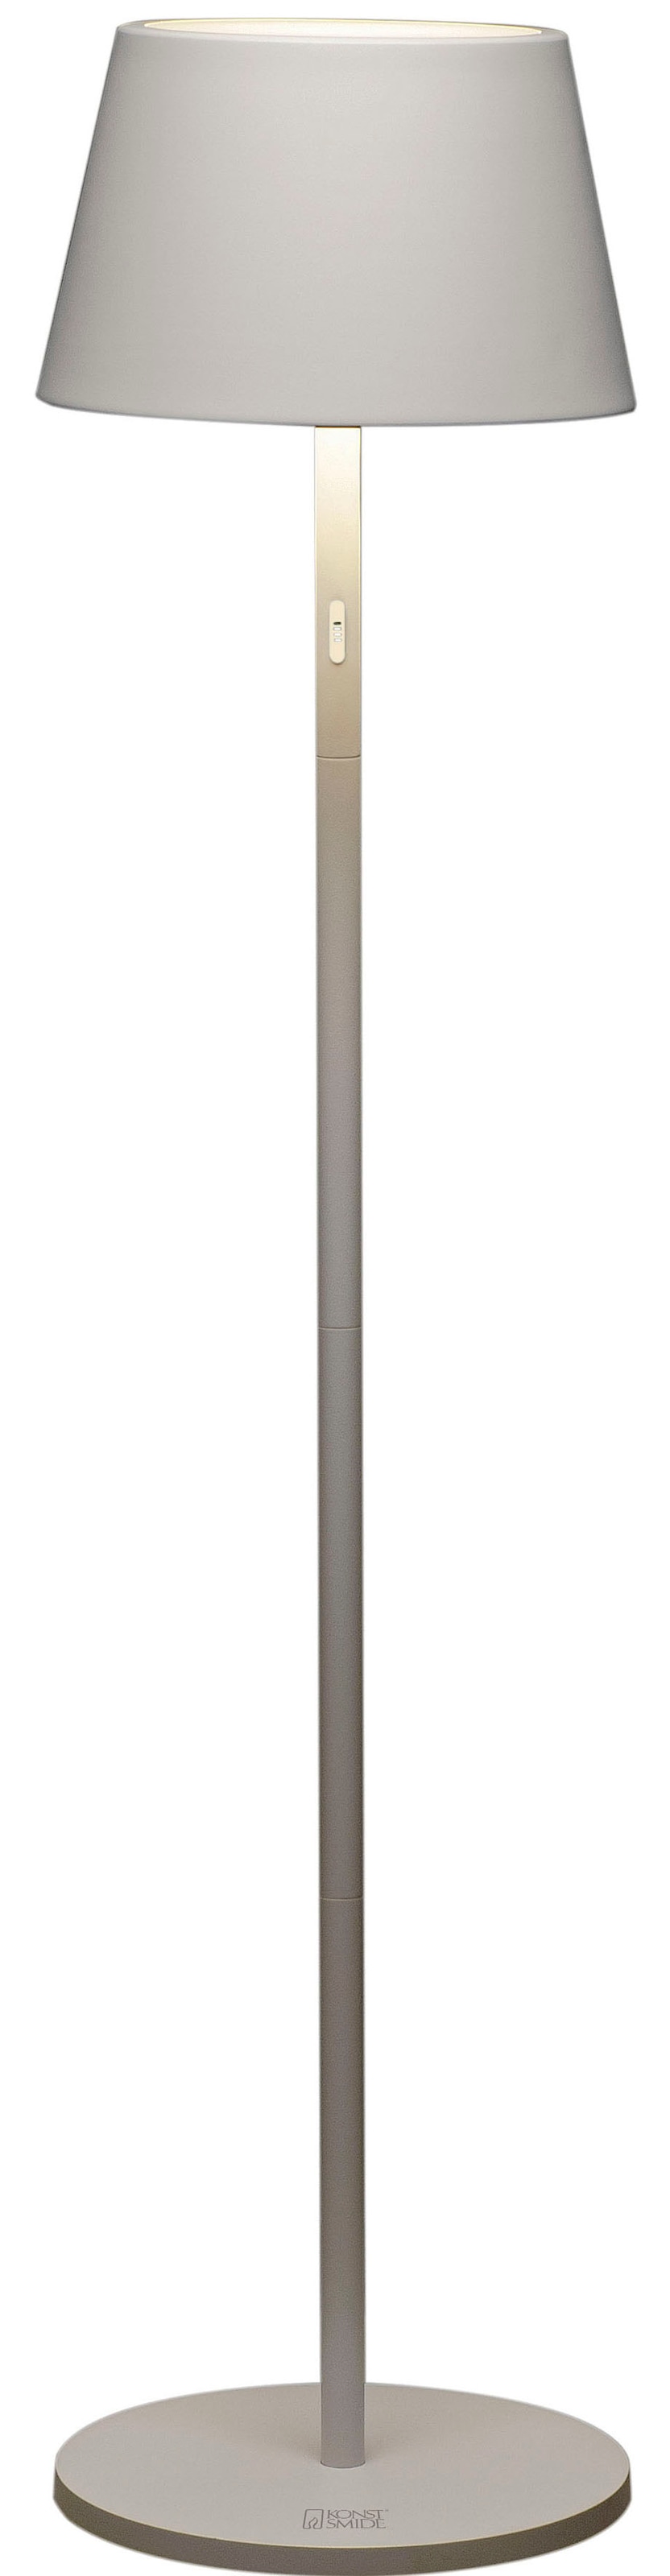 LED Stehlampe »Pomezia«, Pomezia LED USB-Stehlampe weiss, 2700K/3000K/4000K, dimmbar